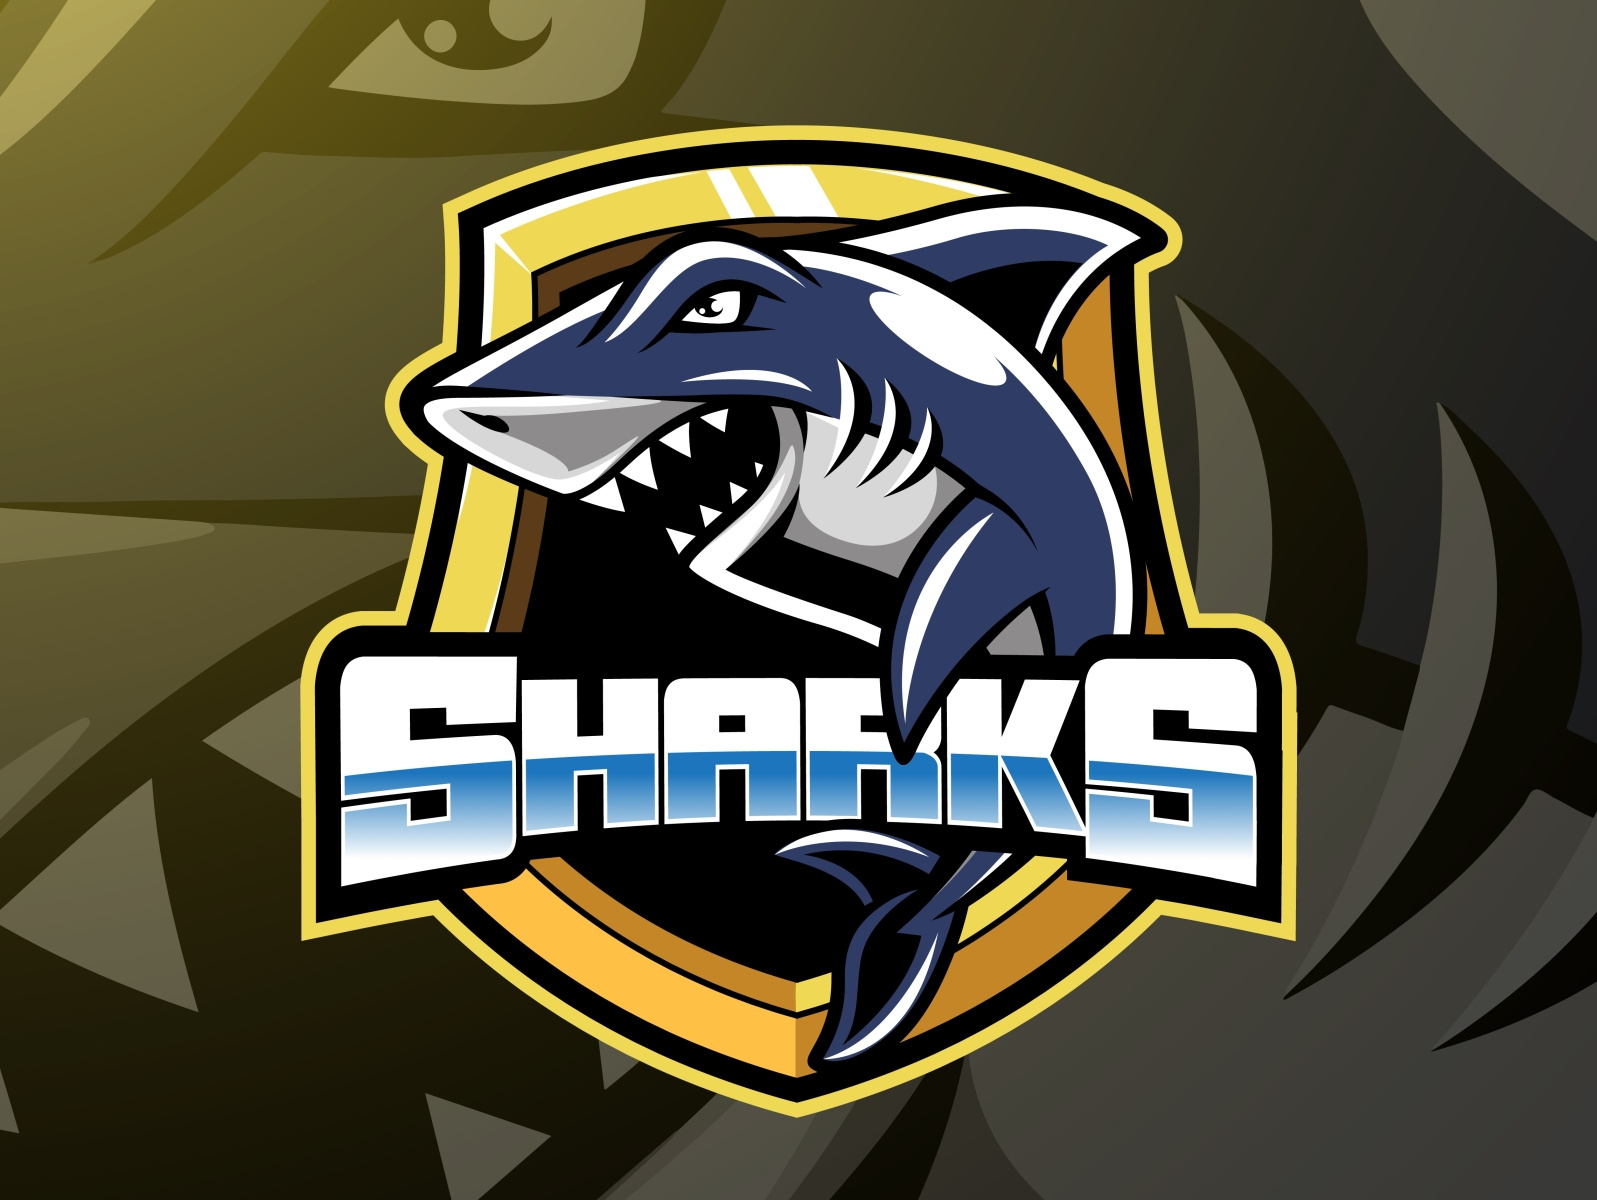 Shark sport mascot logo design by Visink on Dribbble